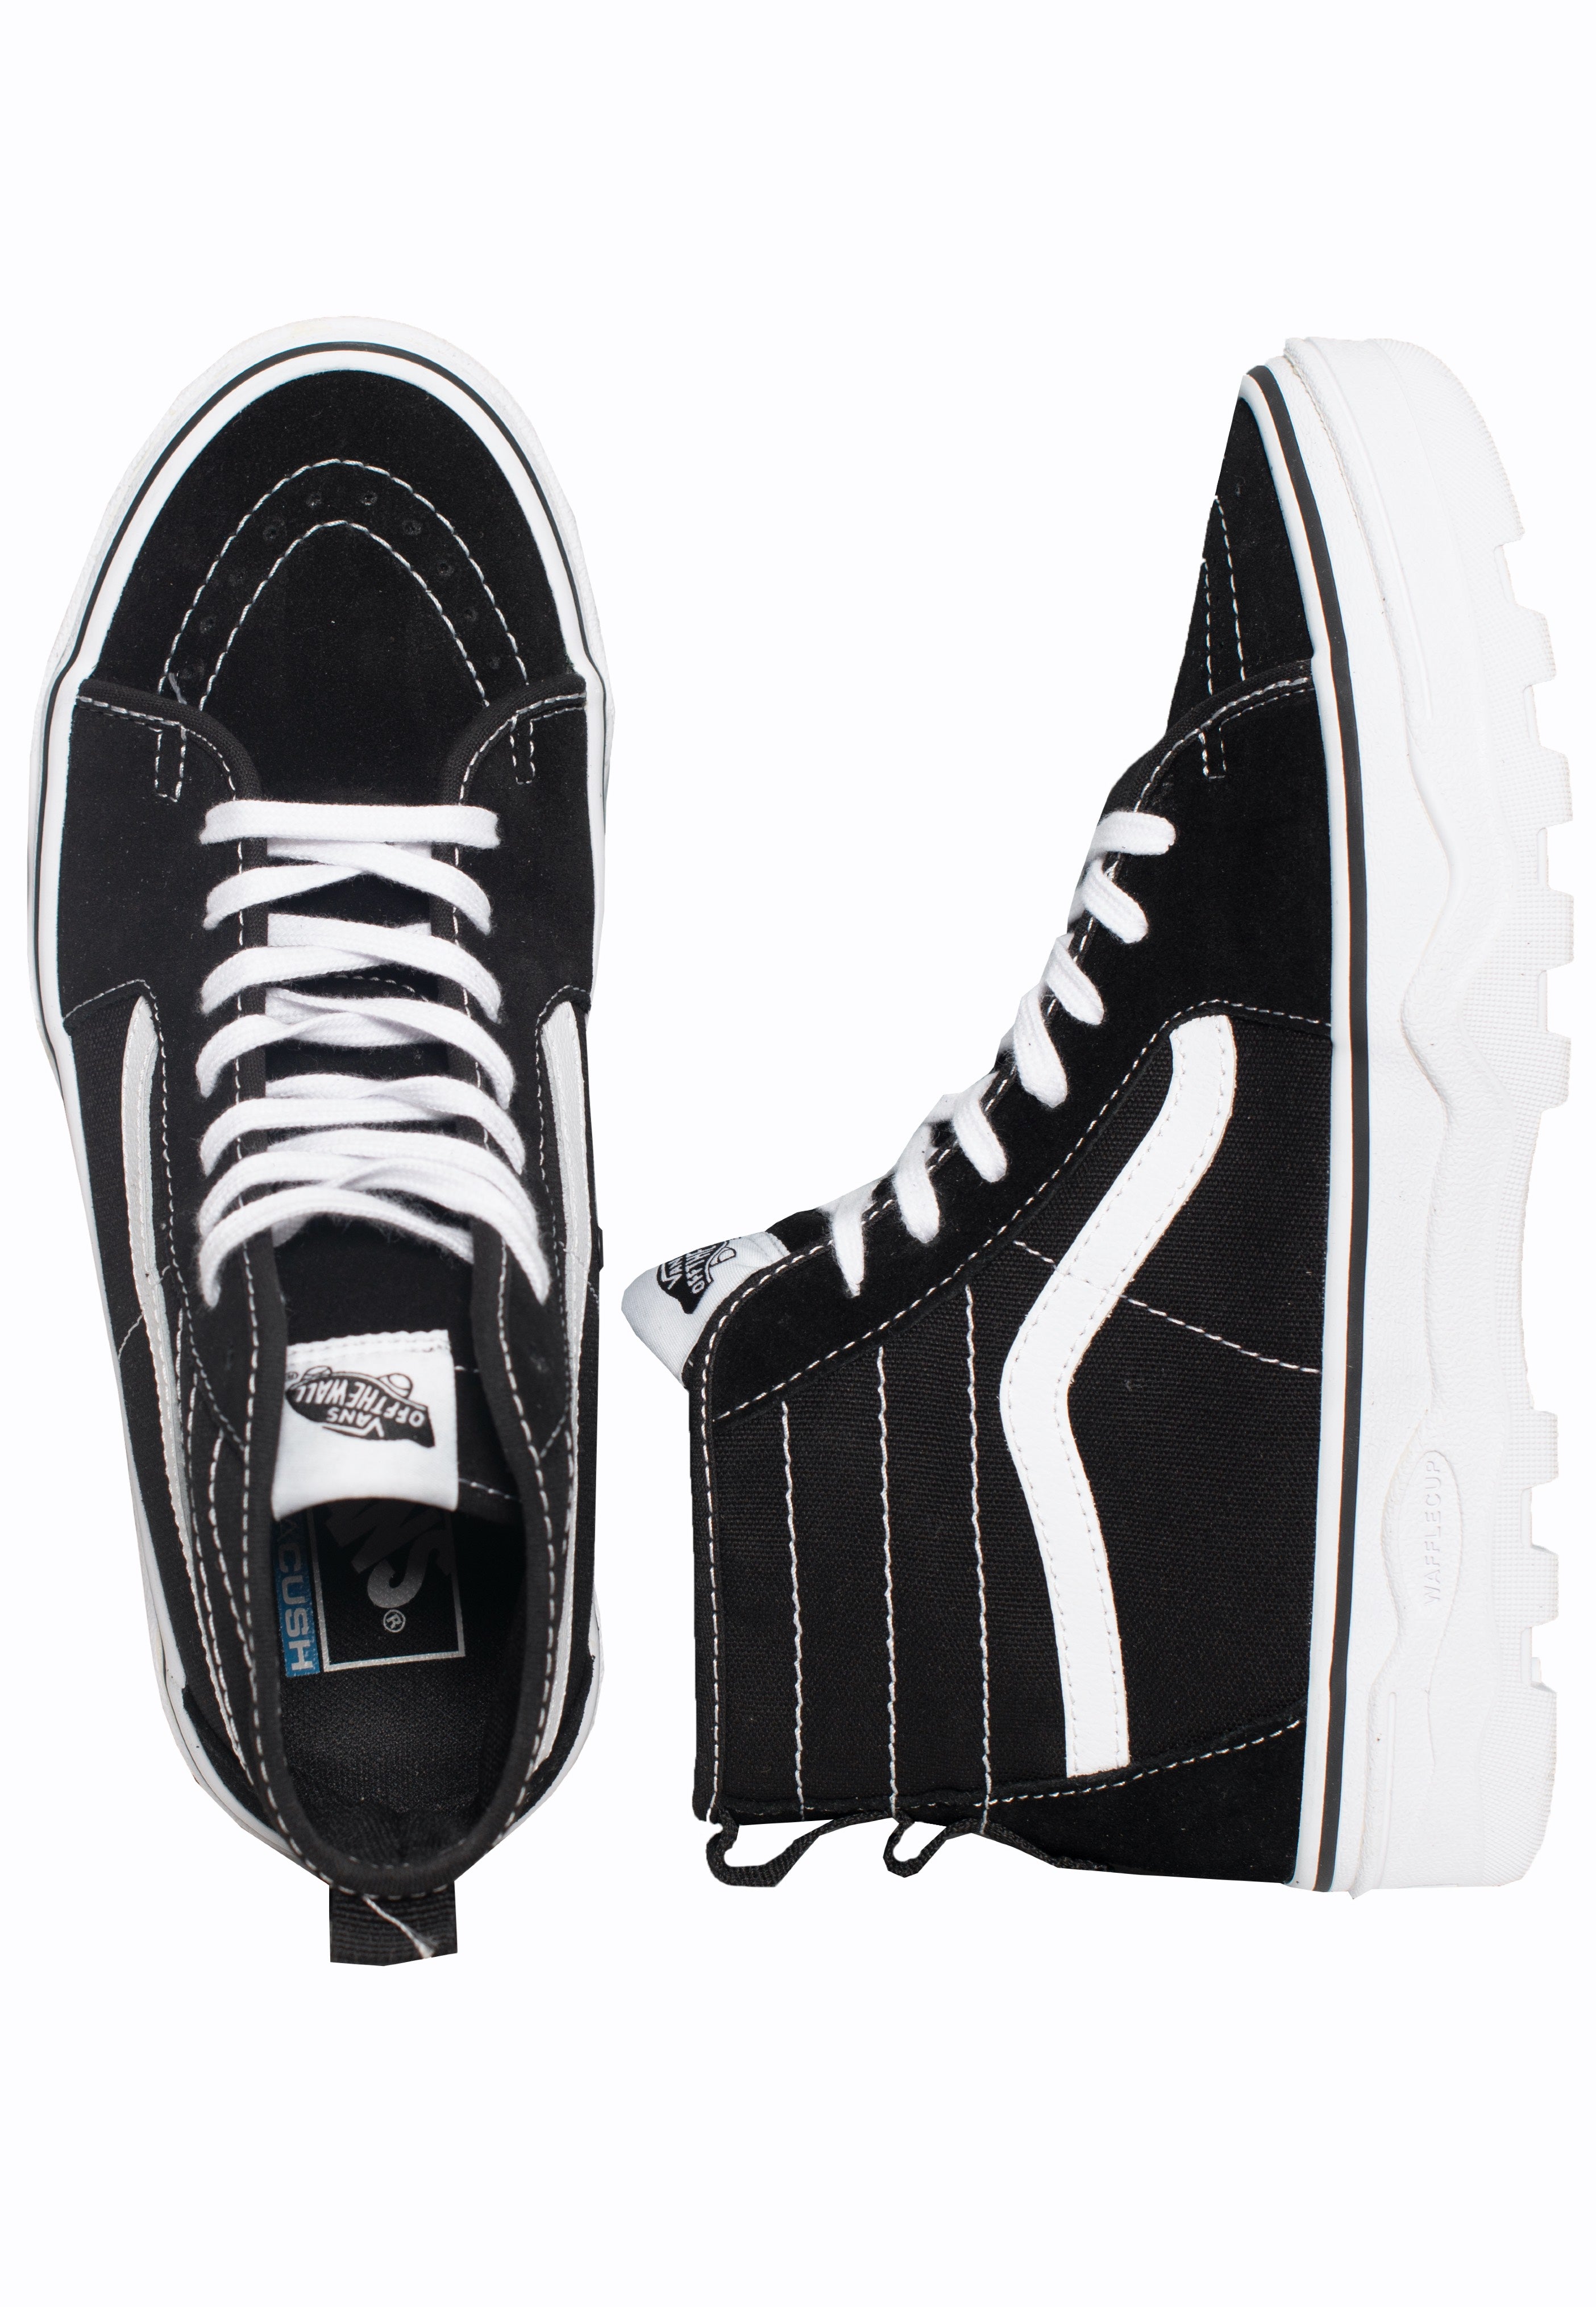 Vans - Sentry Sk8 Hi Black/White - Girl Shoes